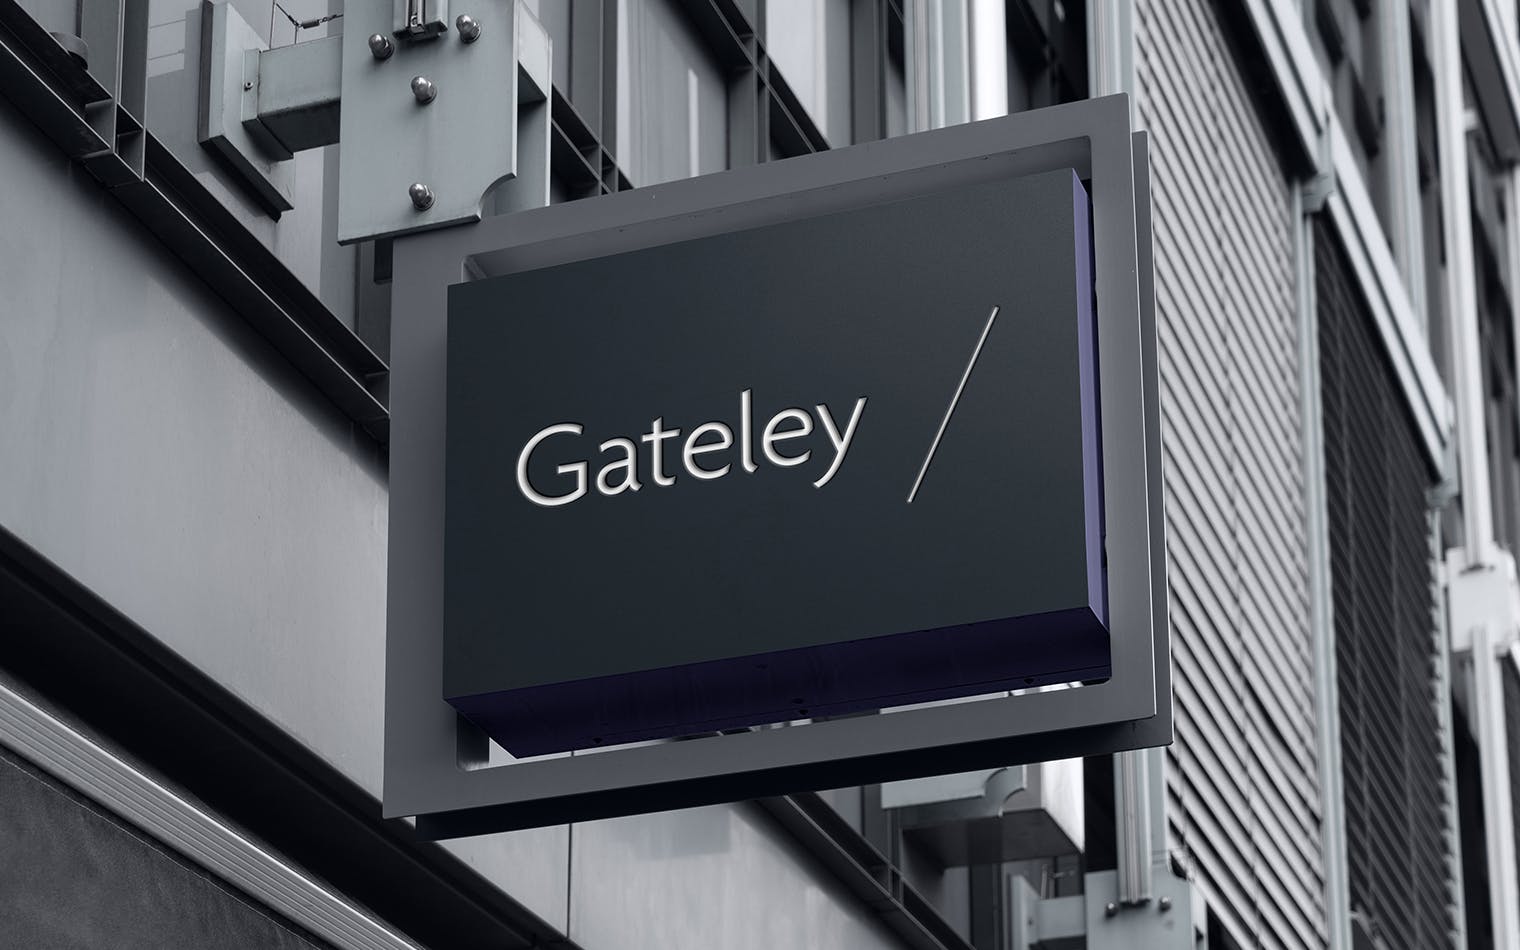 Gateley | Steve Edge Design